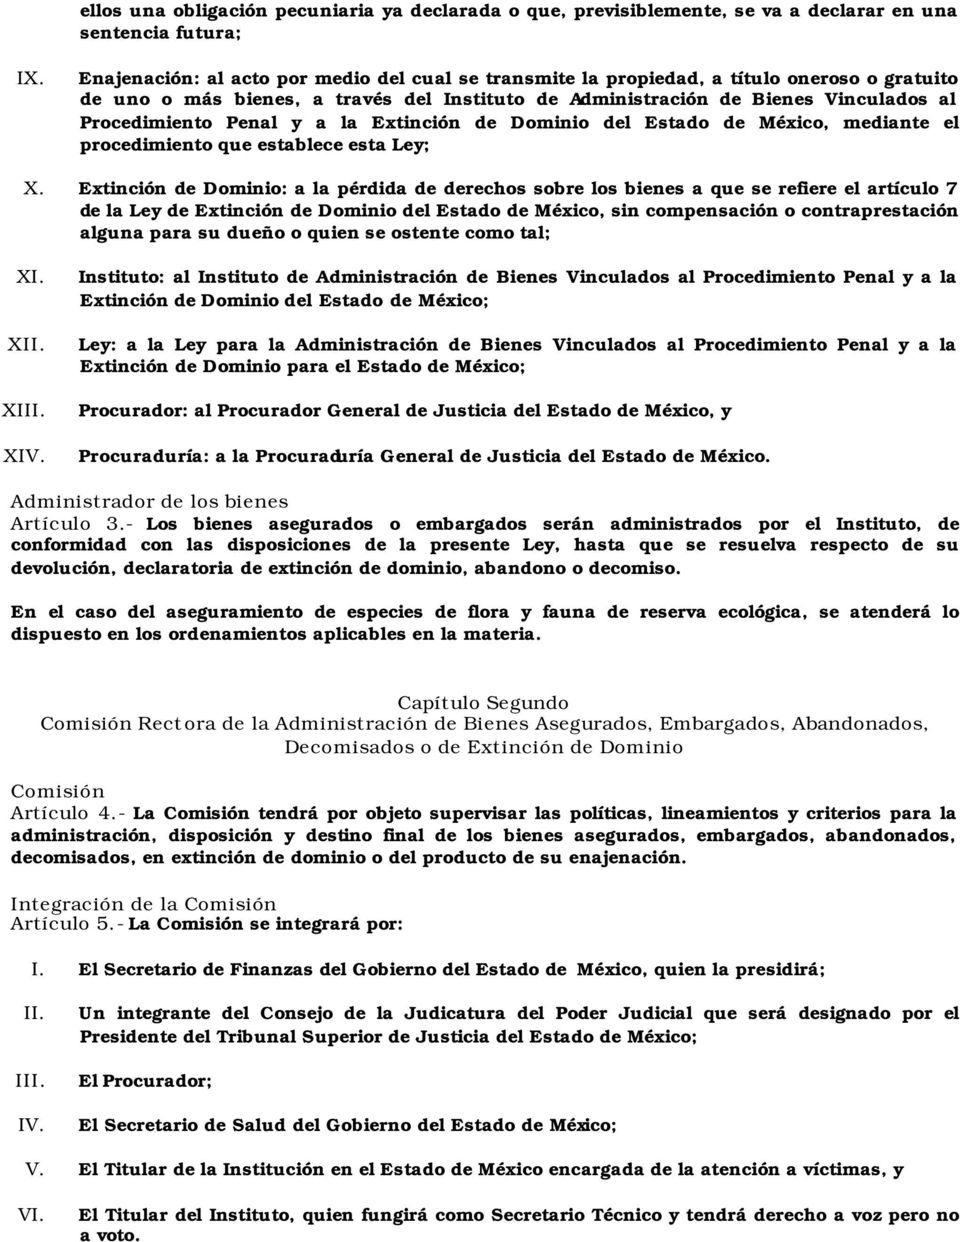 Penal y a la Extinción de Dominio del Estado de México, mediante el procedimiento que establece esta Ley; X.